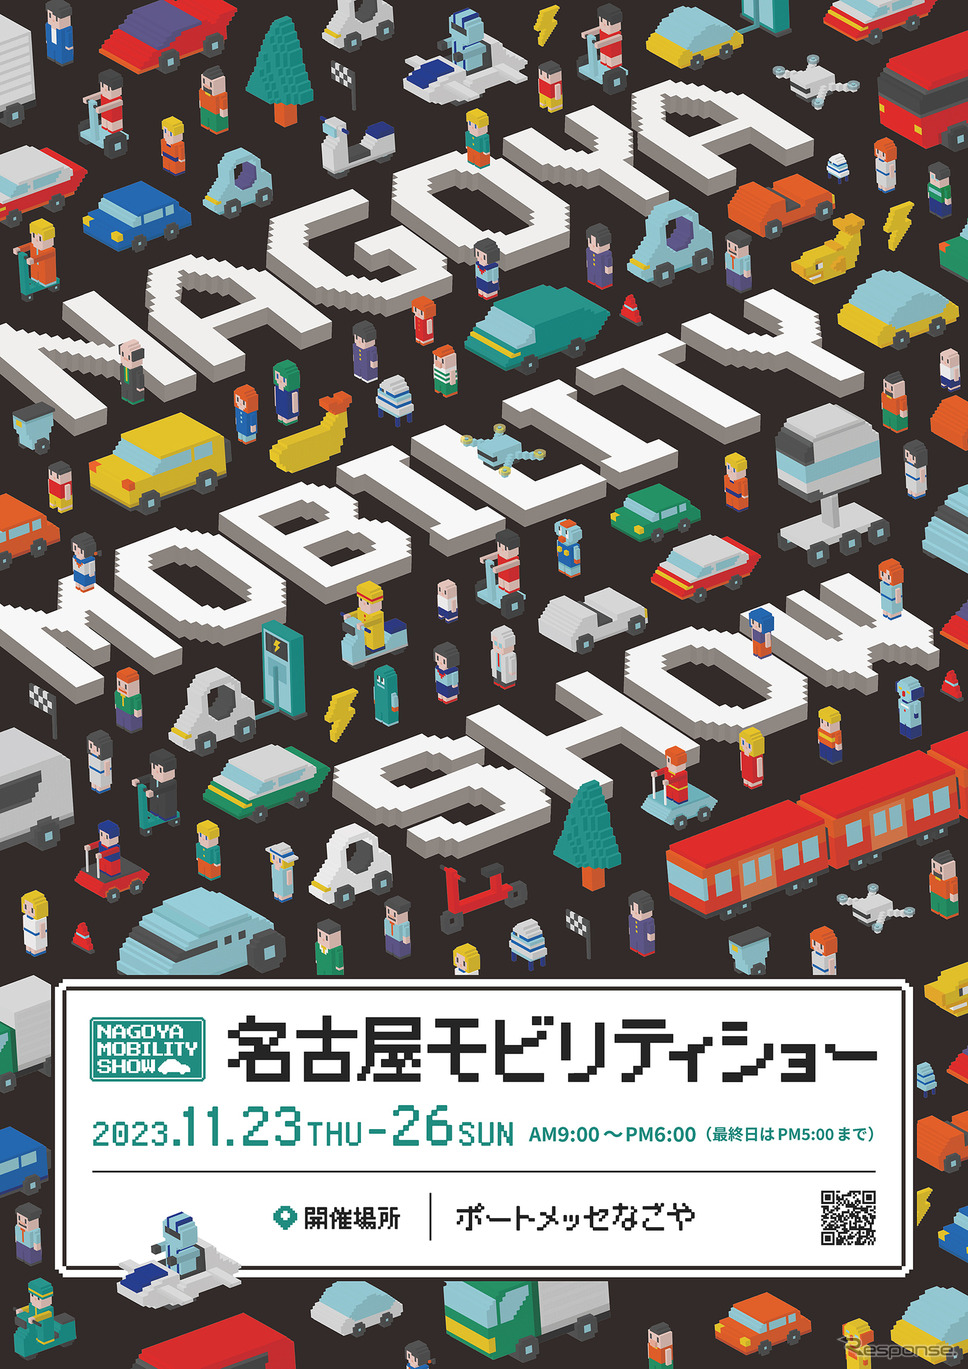 名古屋モビリティショー2023（メインデザイン）《画像提供 中部経済新聞社》